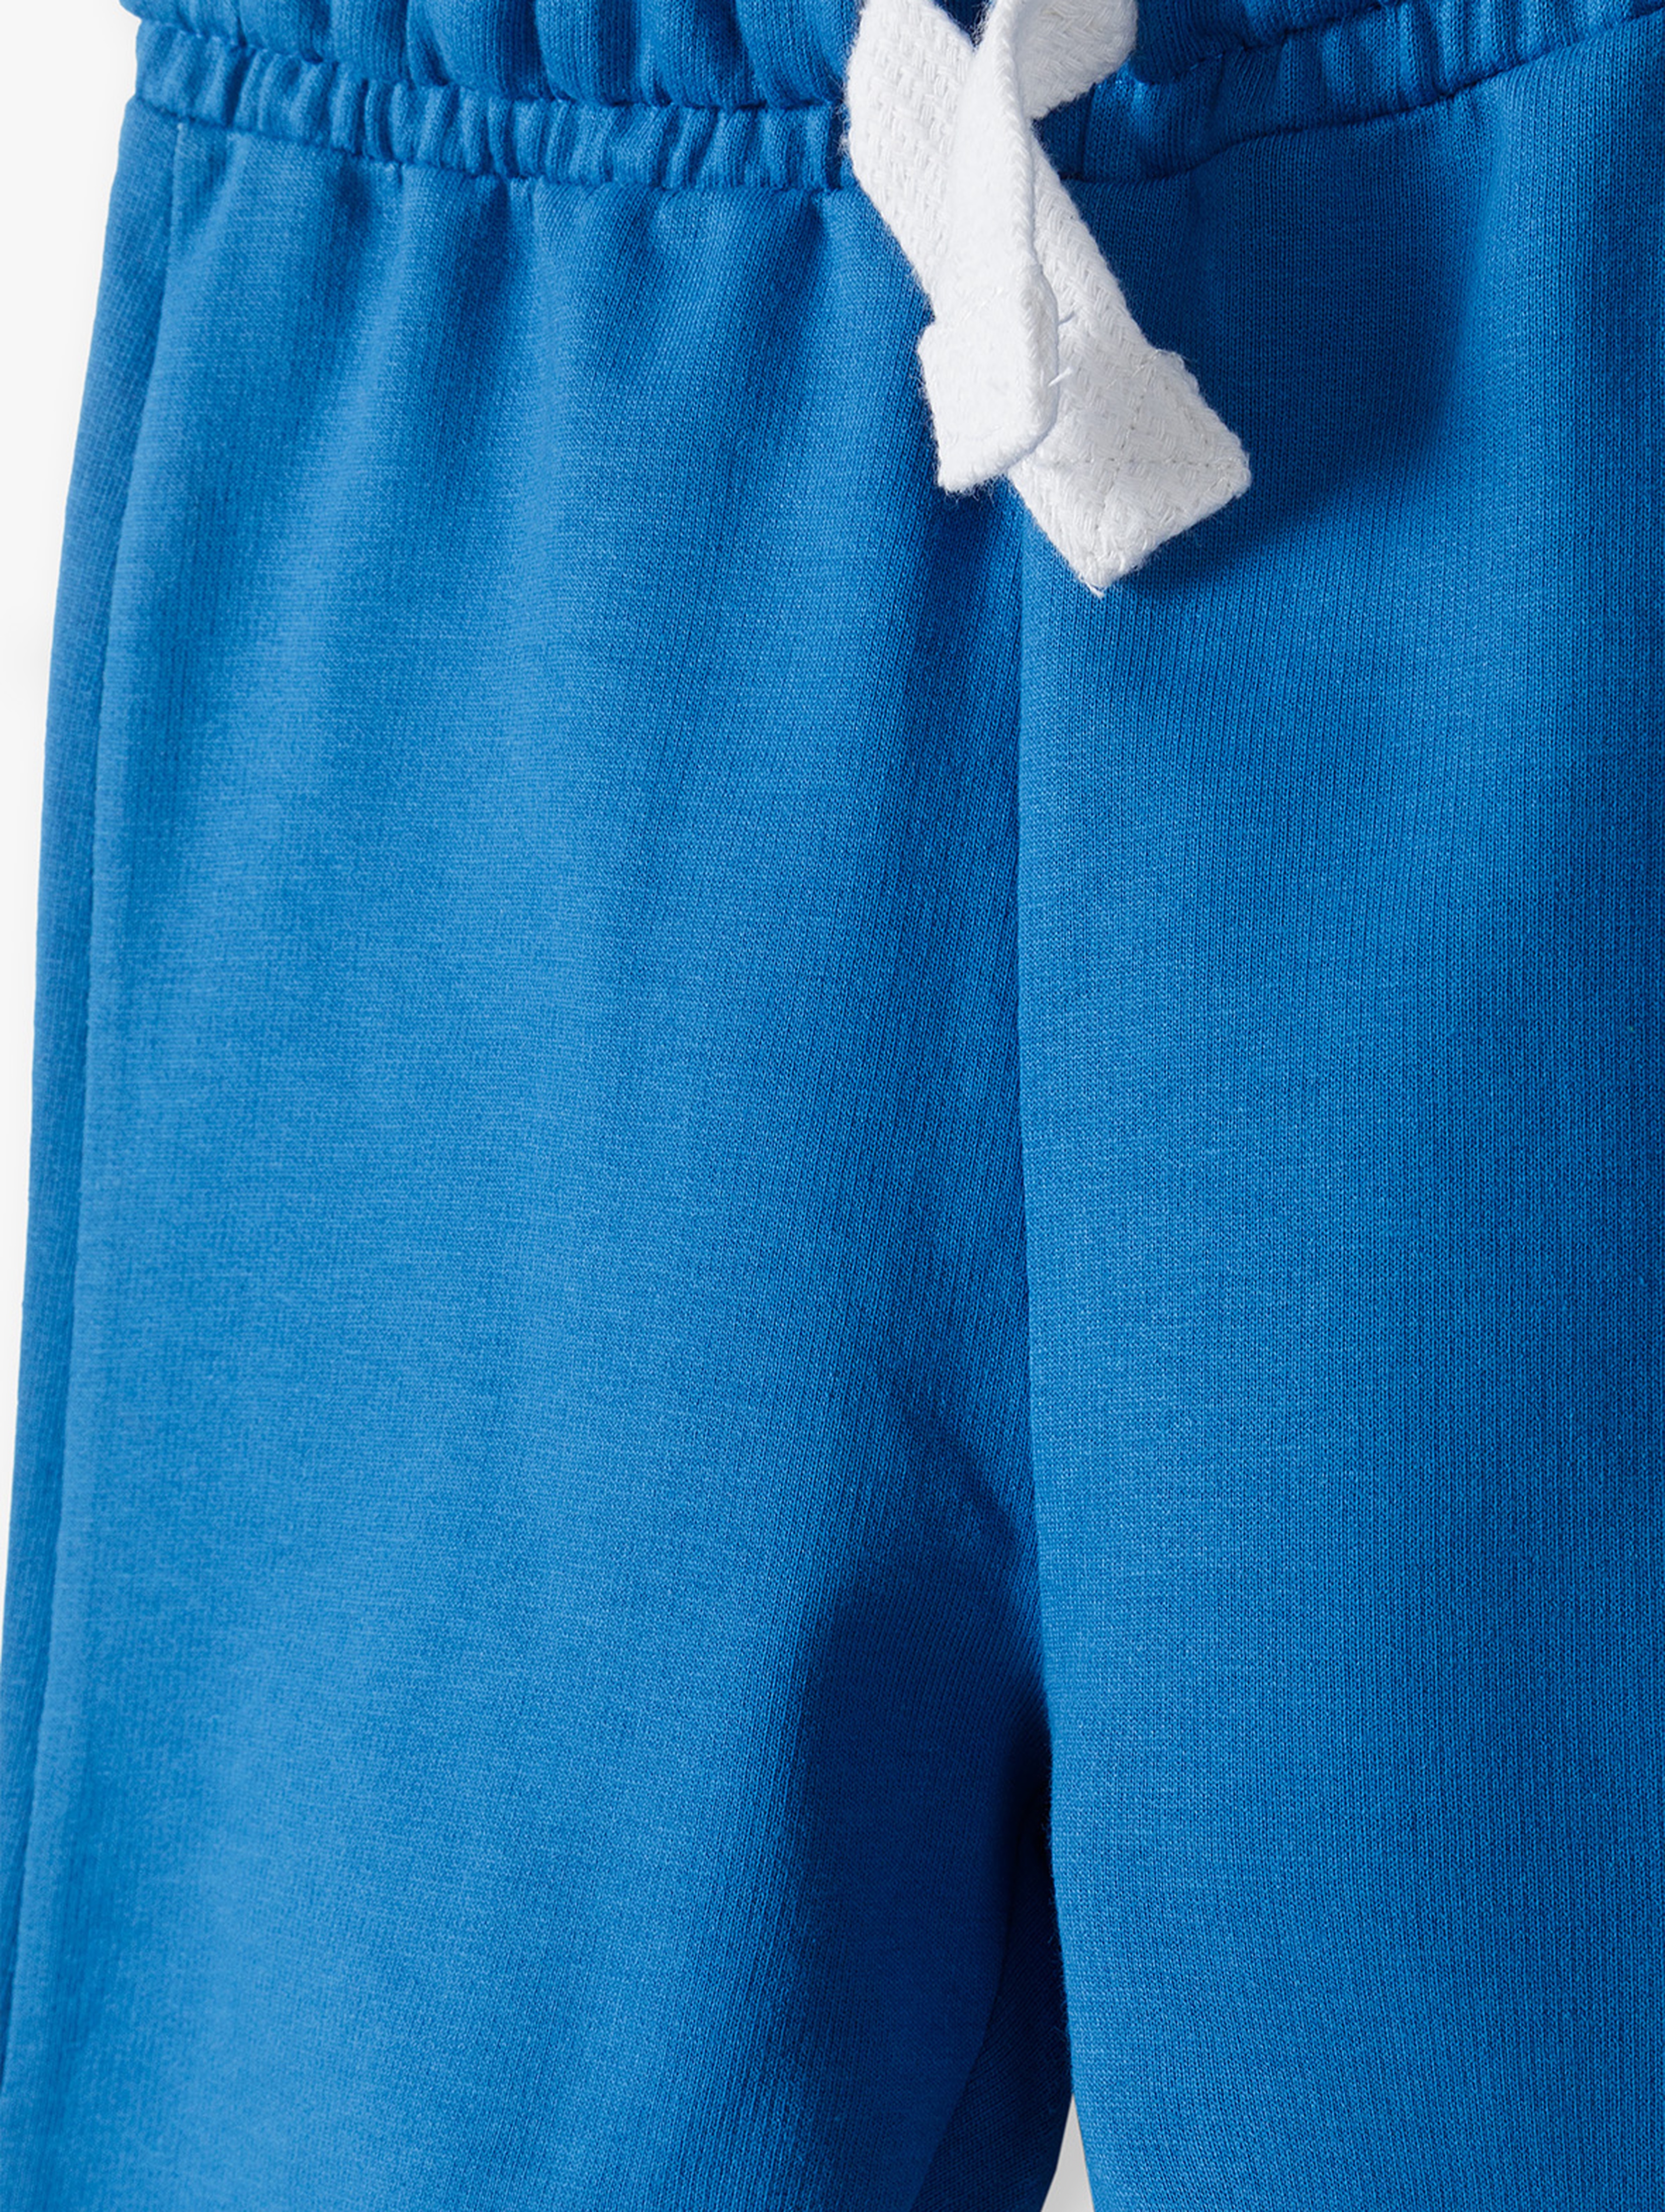 Spodnie dresowe chłopięce basic niebieskie